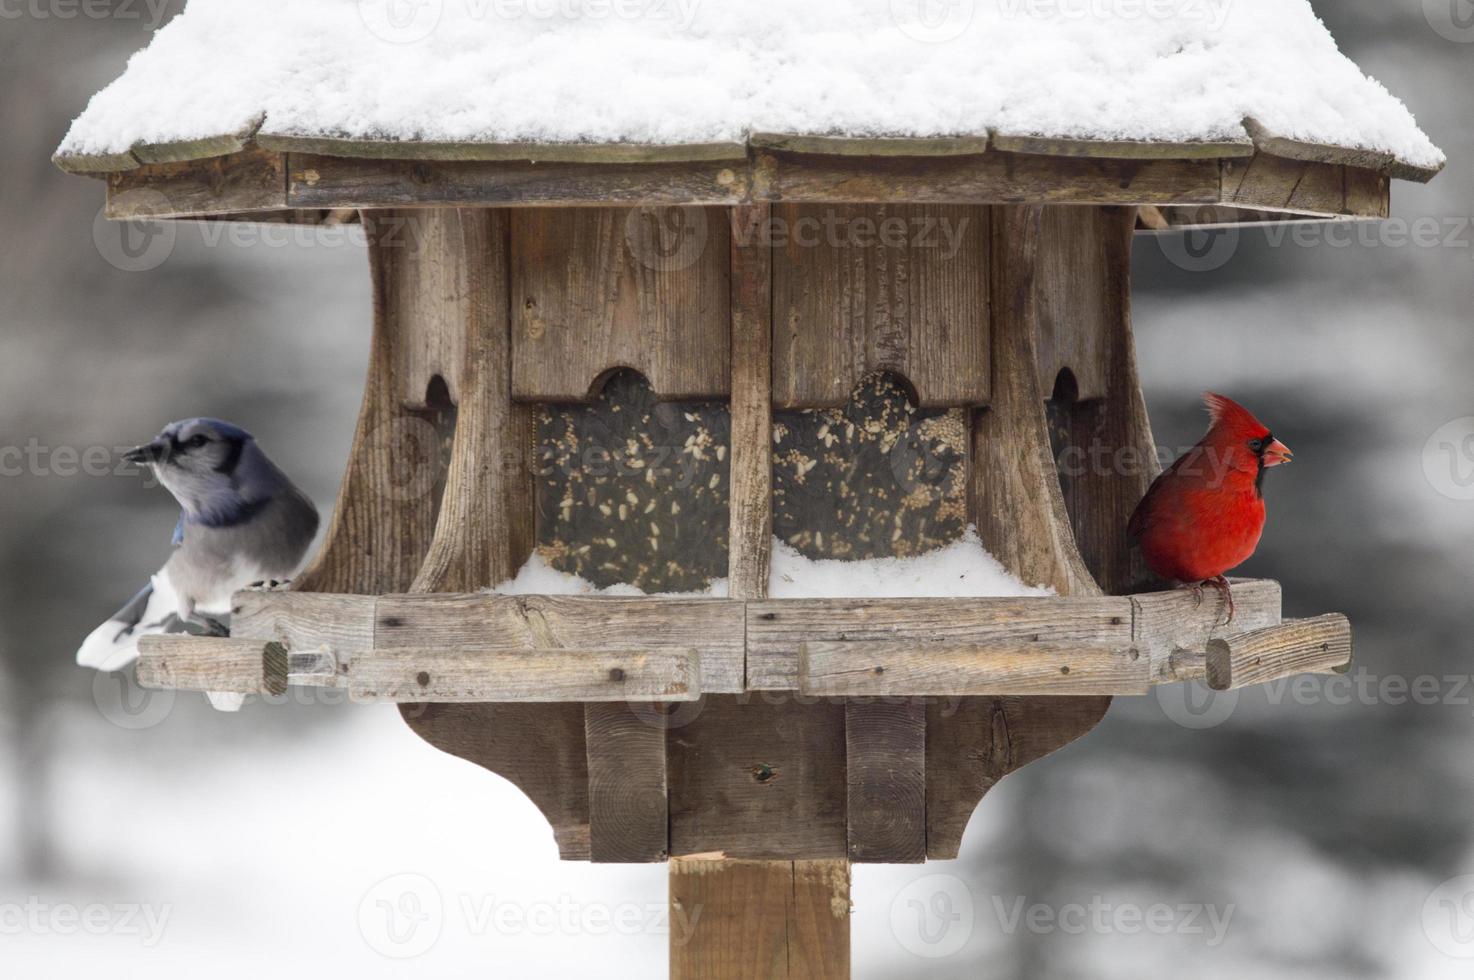 Cardinal at Bird Feeder photo